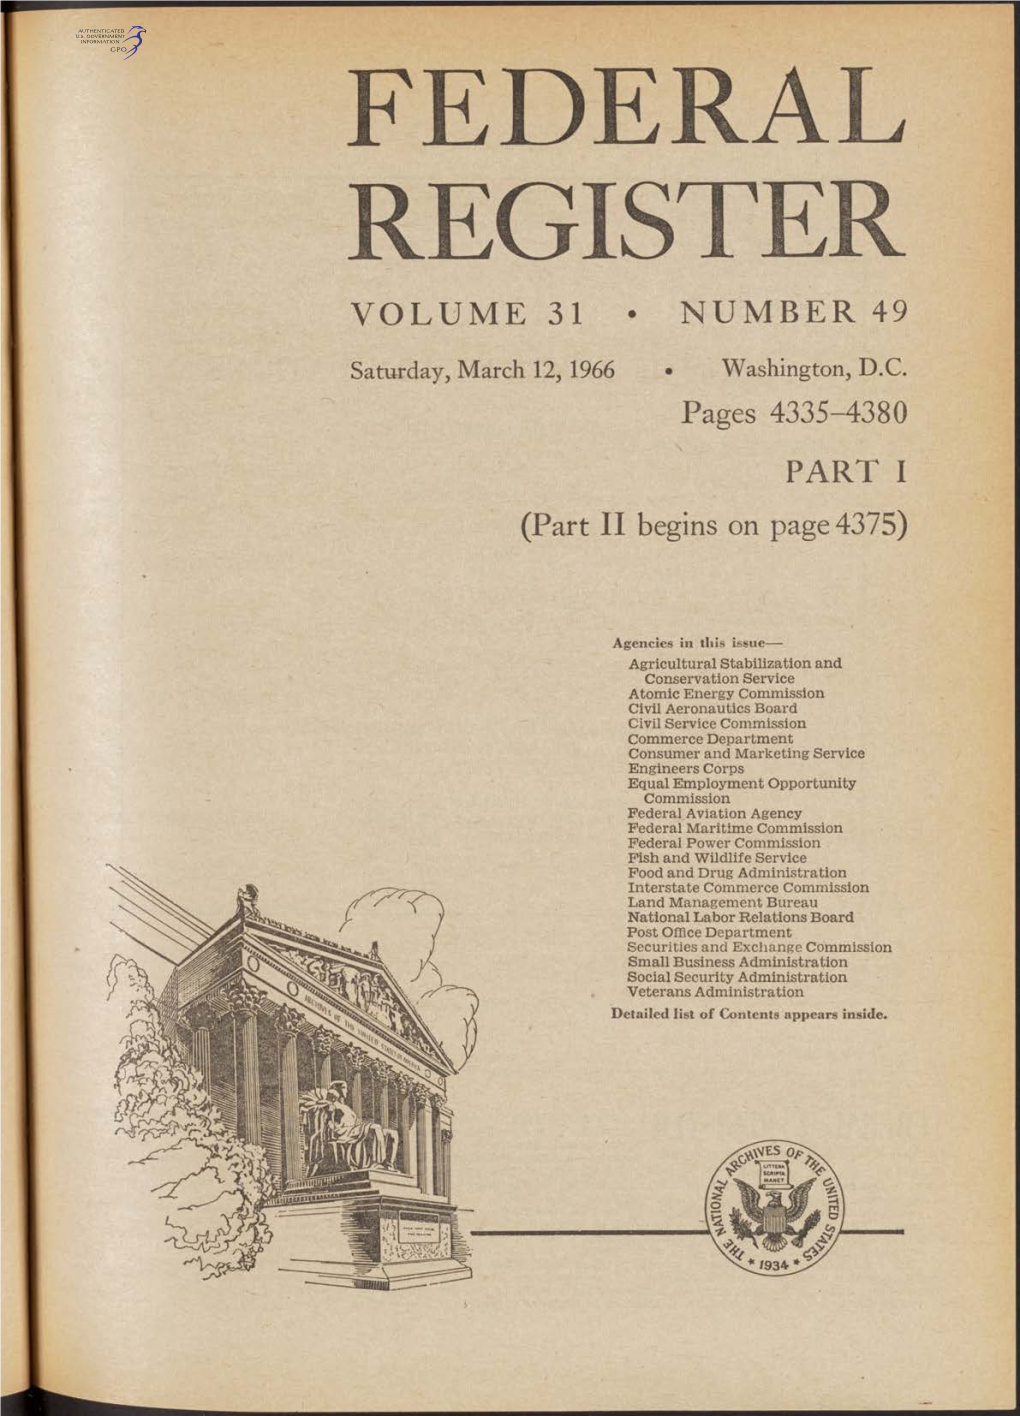 Federal Register Volume 31 • Number 49